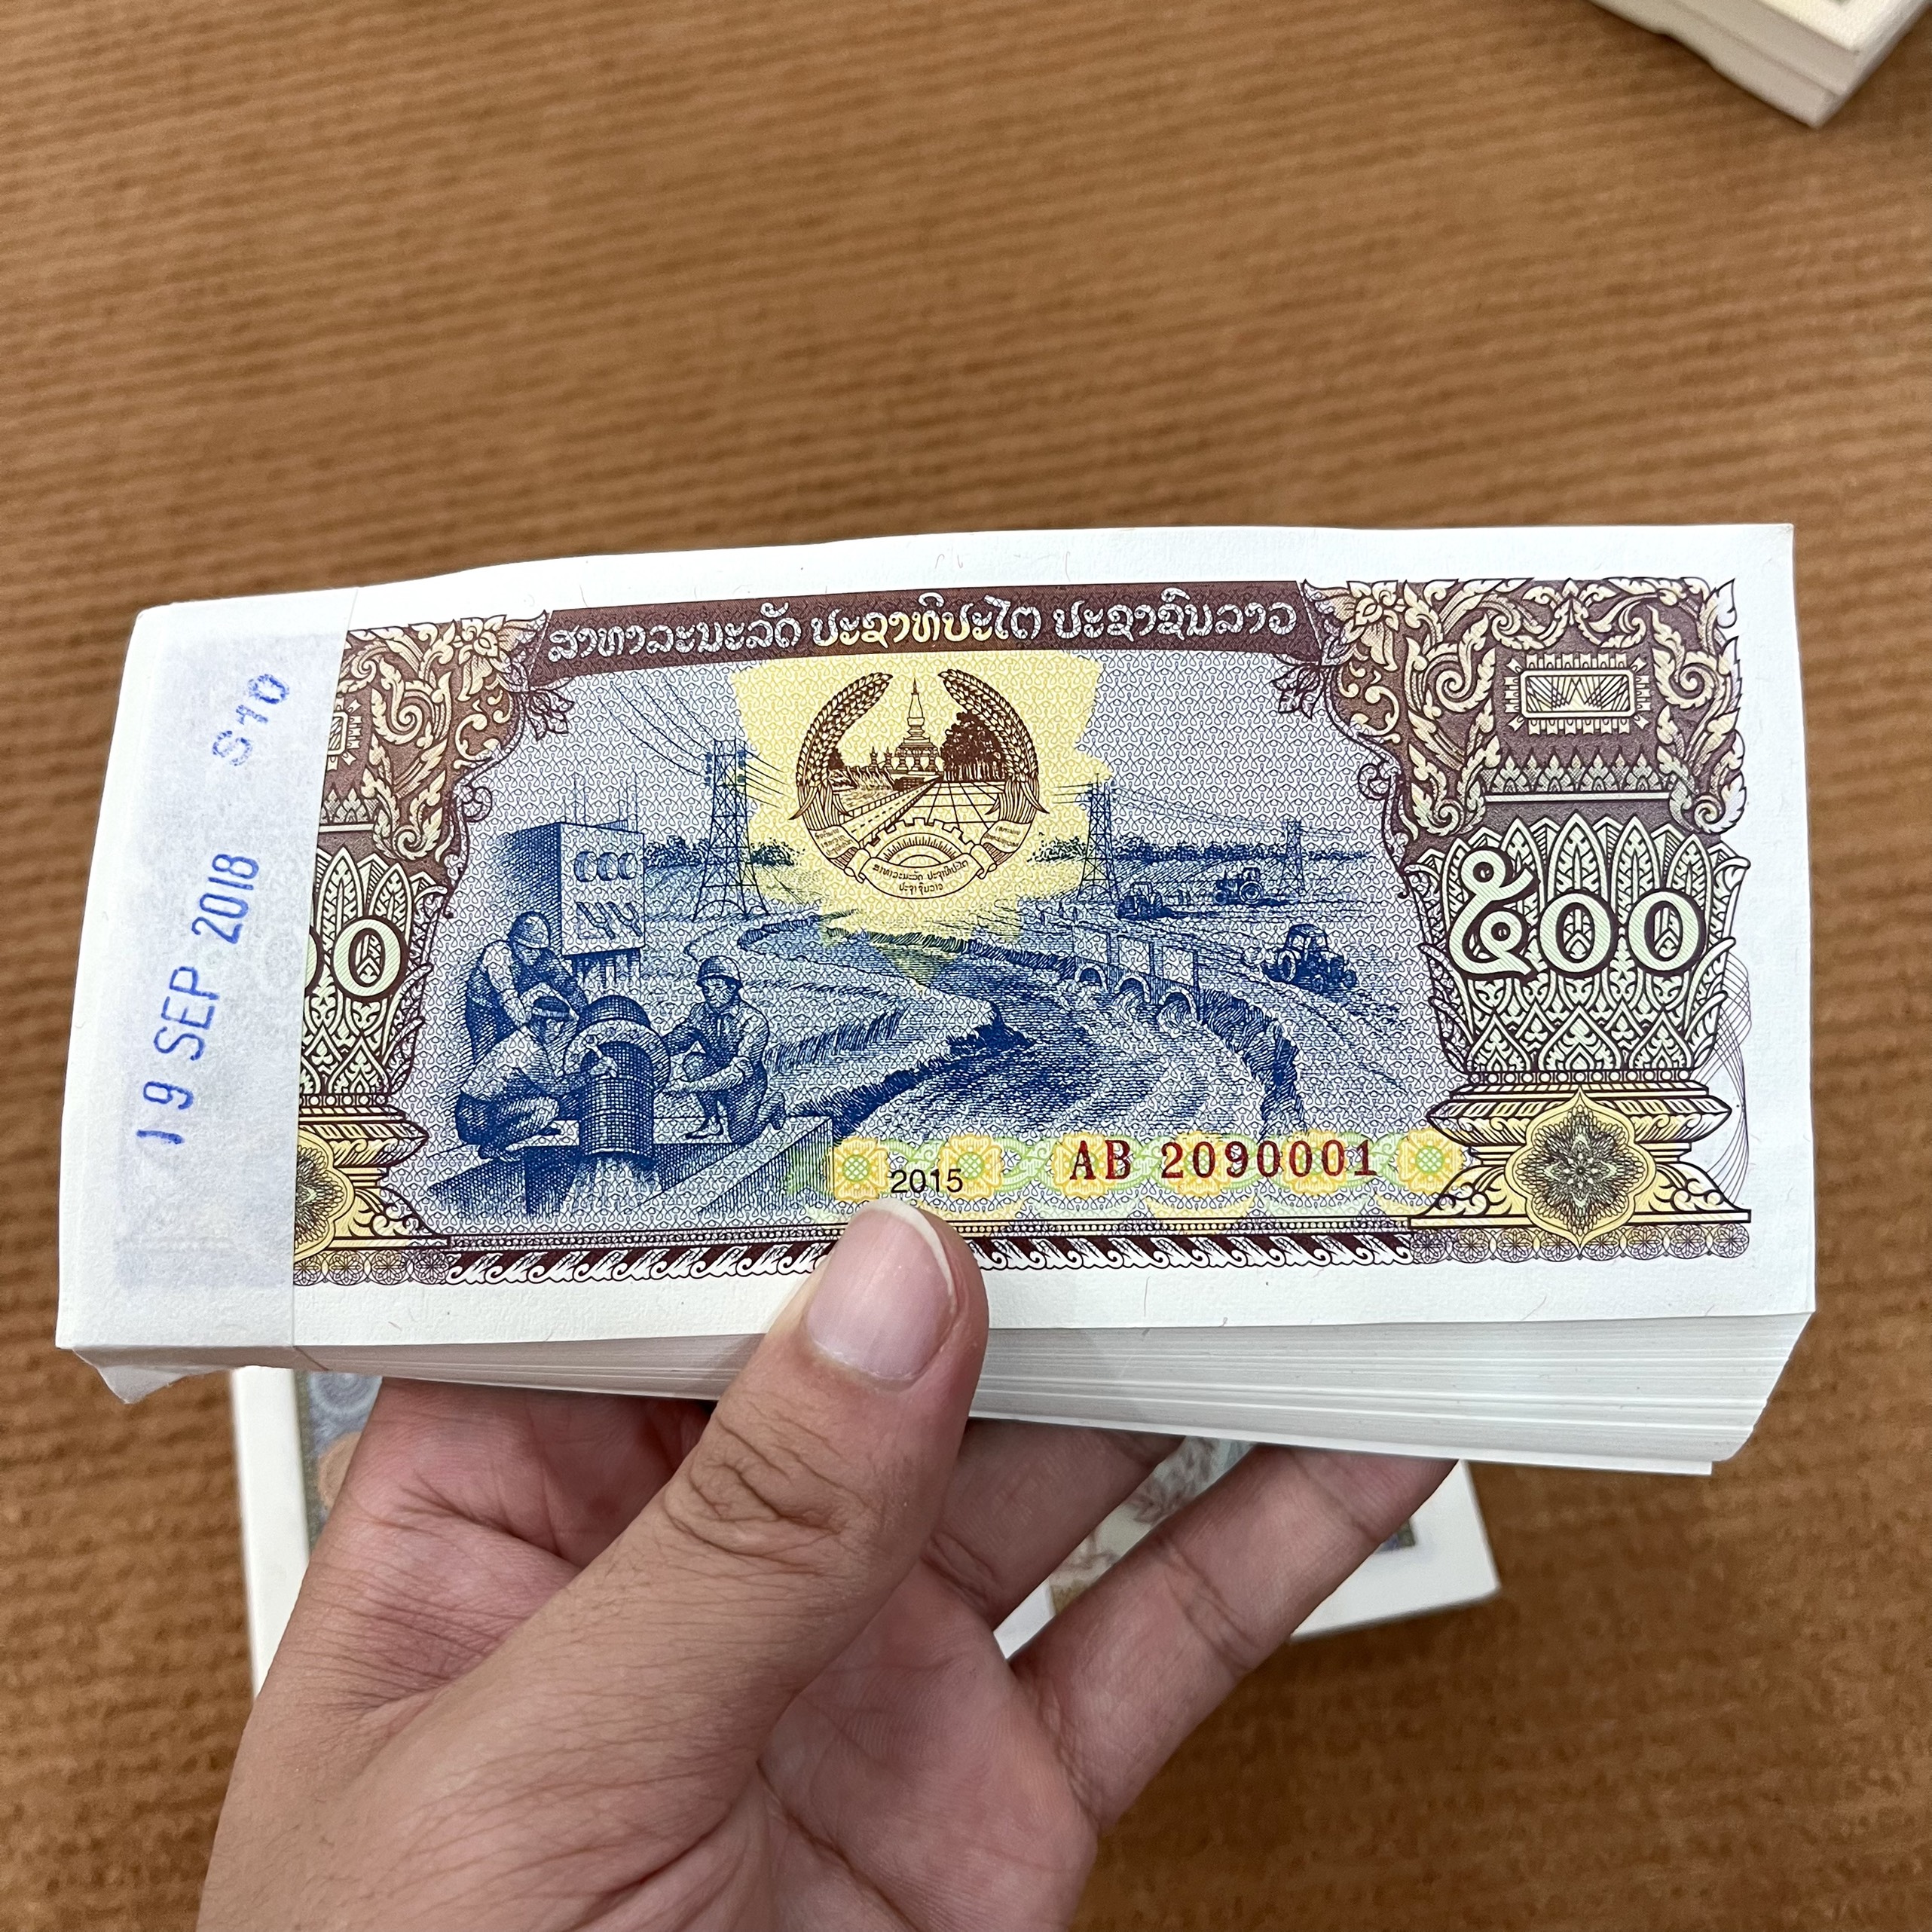 100 Tờ Tiền Lào 500 Kip Chất Lượng Mới 100% - Liền Seri - Sưu Tập - Quà Tặng Tết Độc Đáo